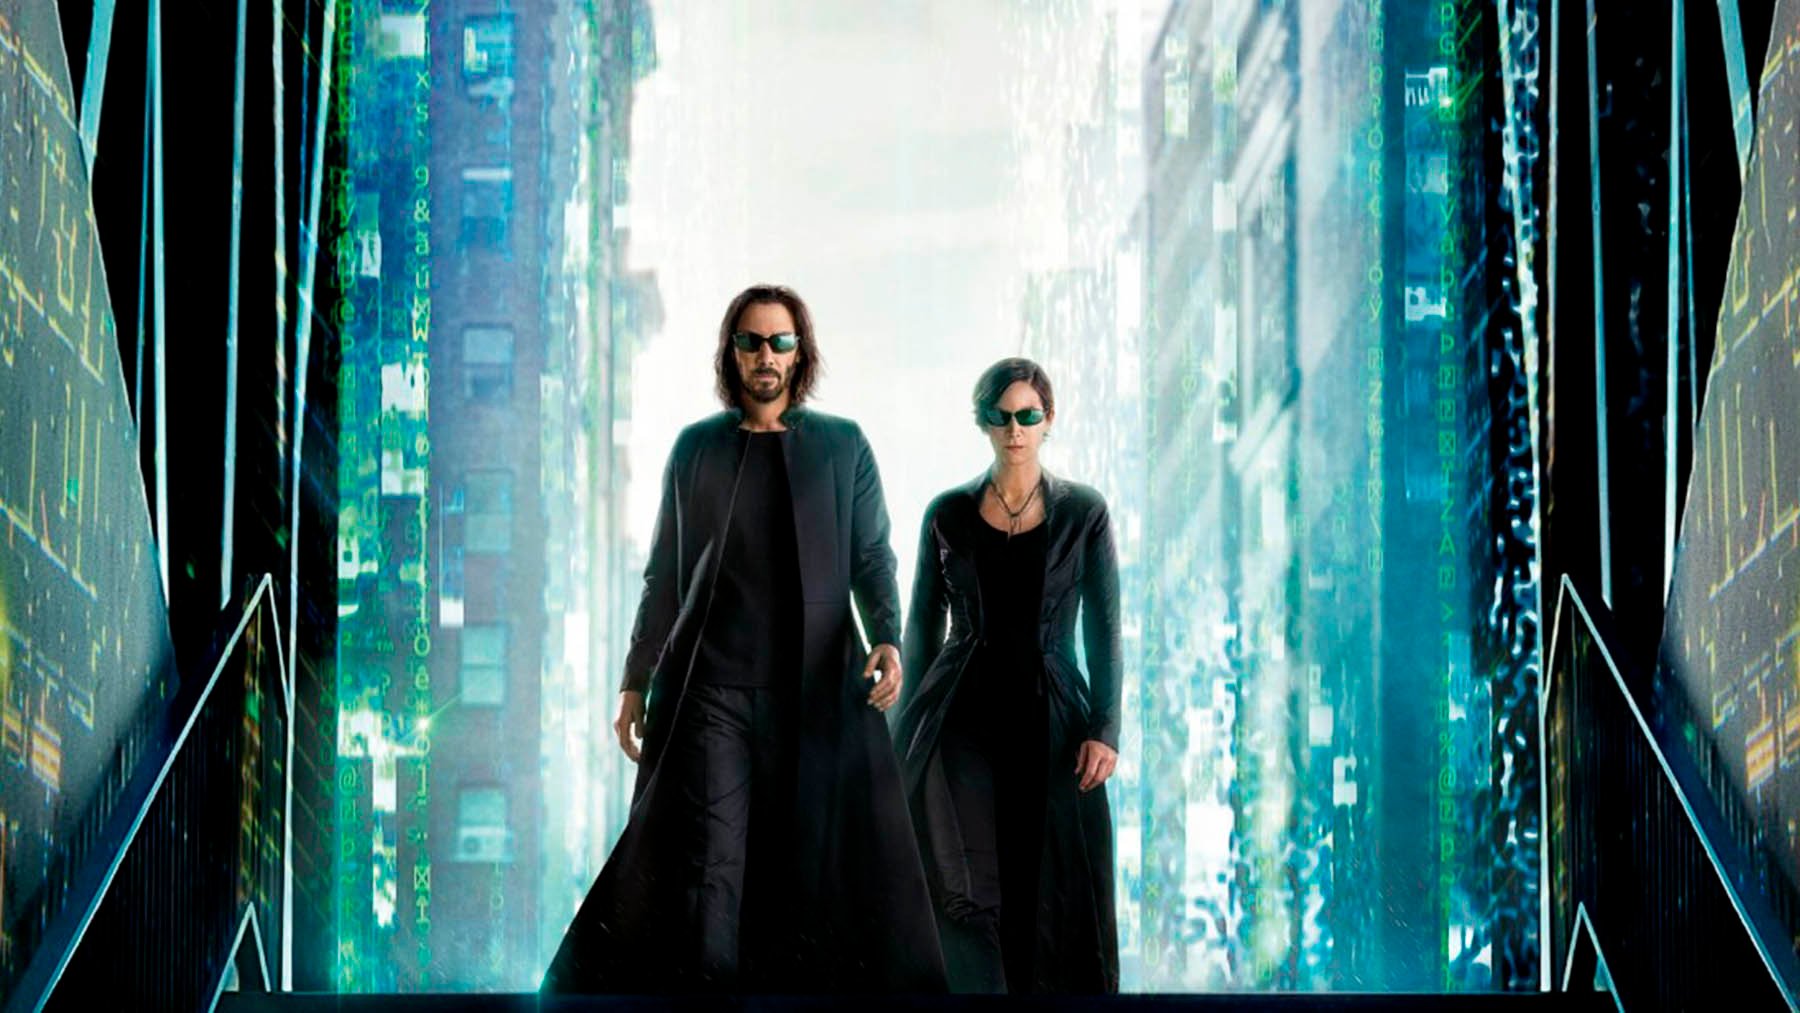 ‘Matrix Resurrections’ (Warner Bros Pictures)